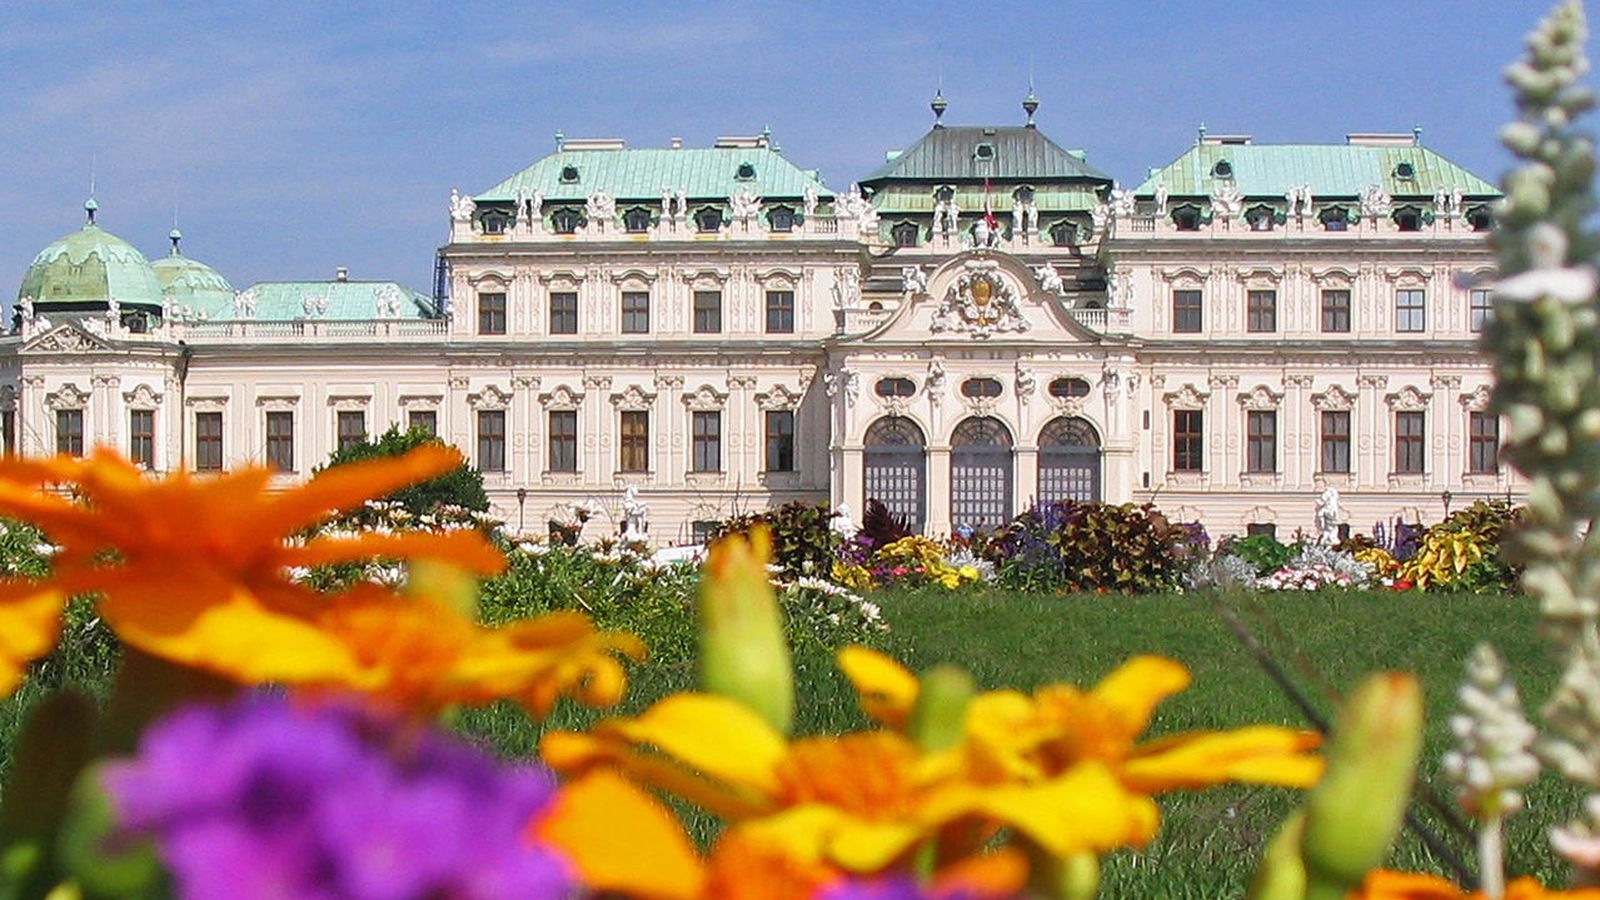 Foto: Castillo de Belvedere, en Viena (Flickr/Ashitaka San)